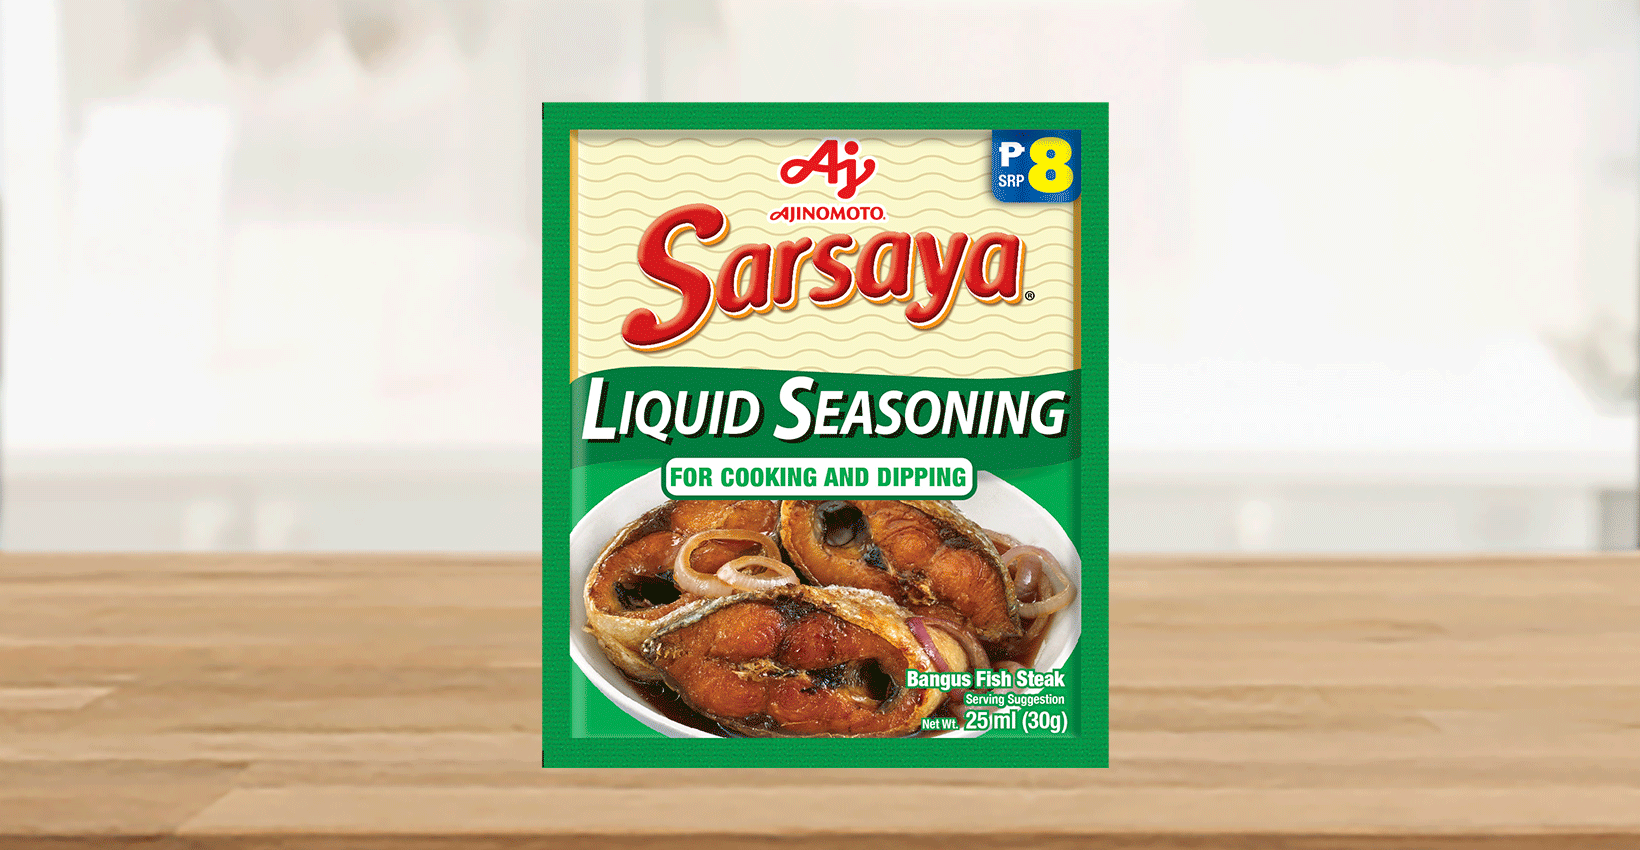 ajinomoto sarsaya liquid seasoning